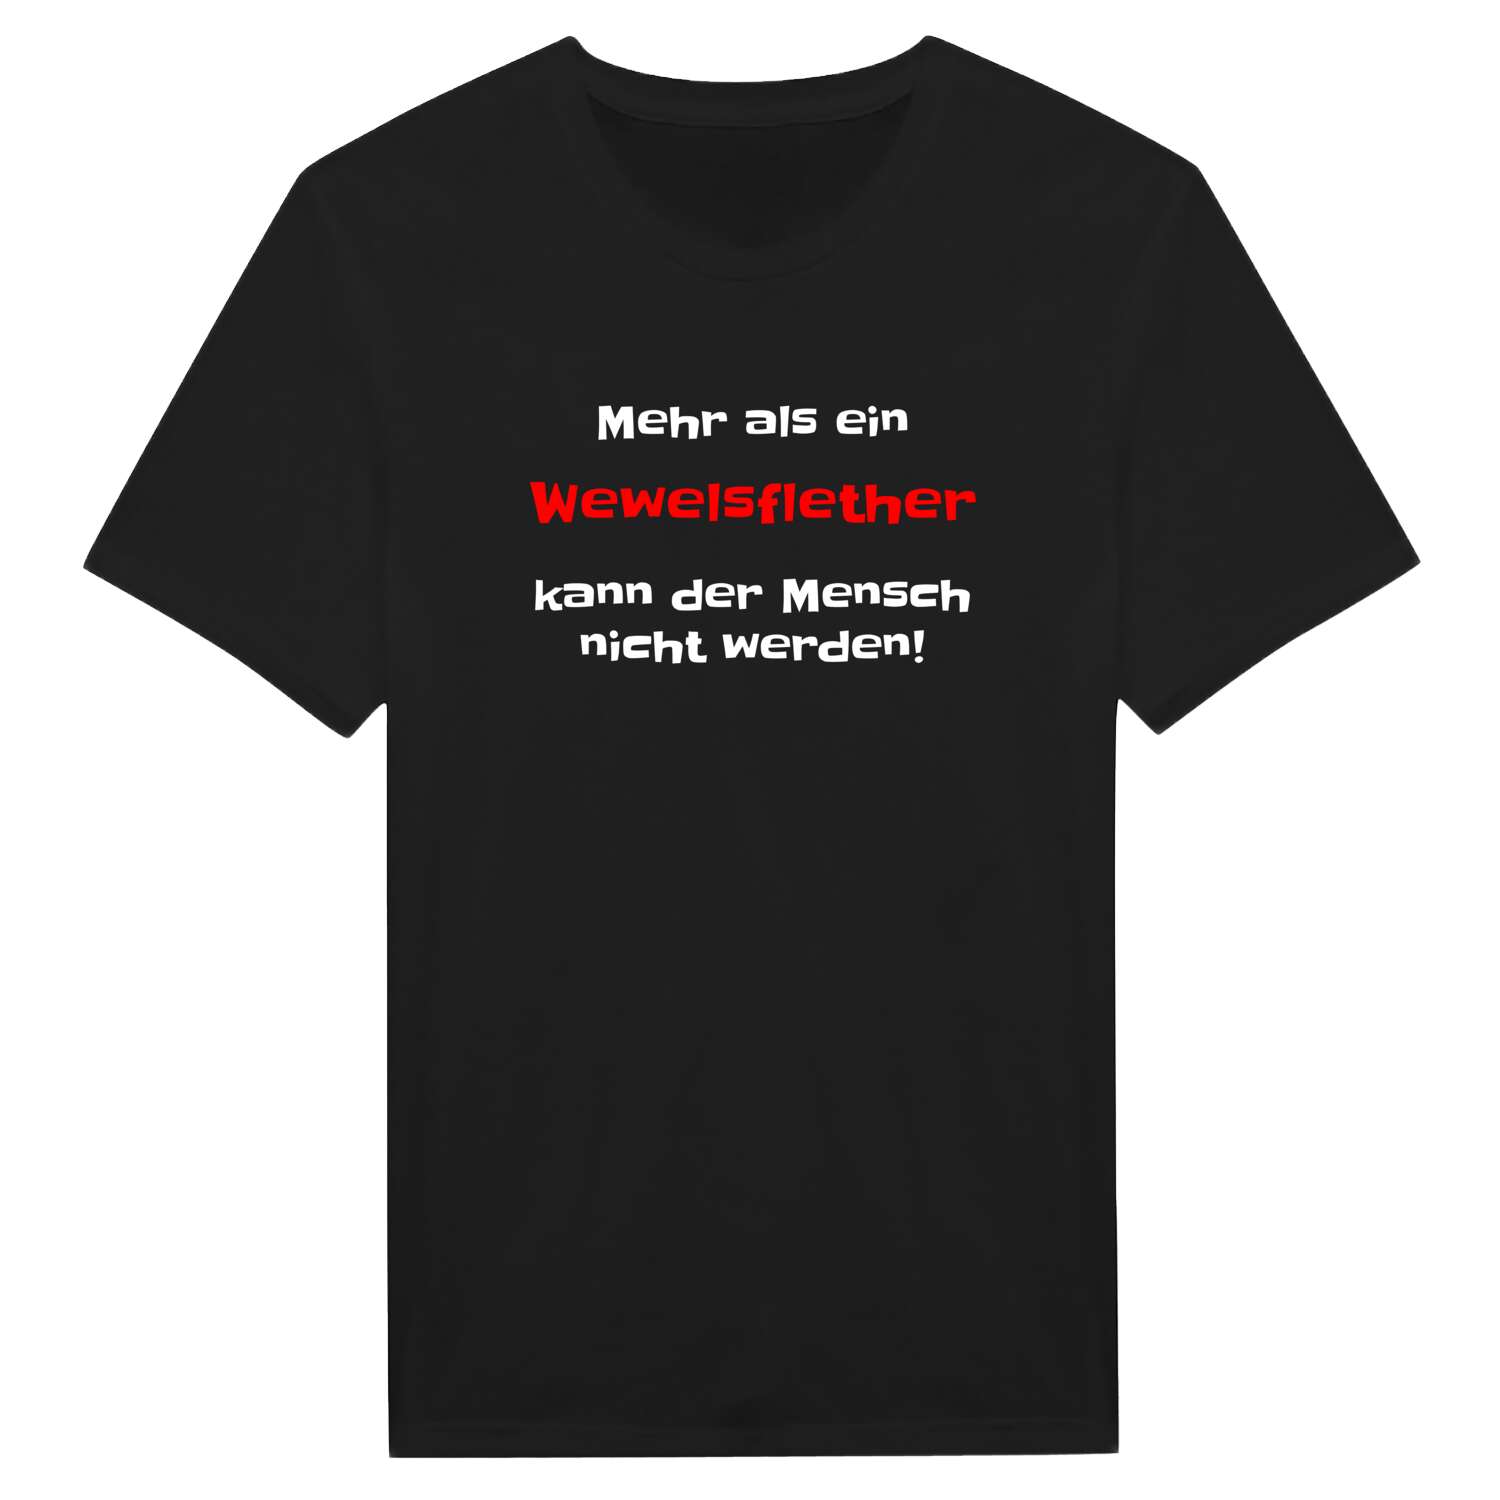 Wewelsfleth T-Shirt »Mehr als ein«